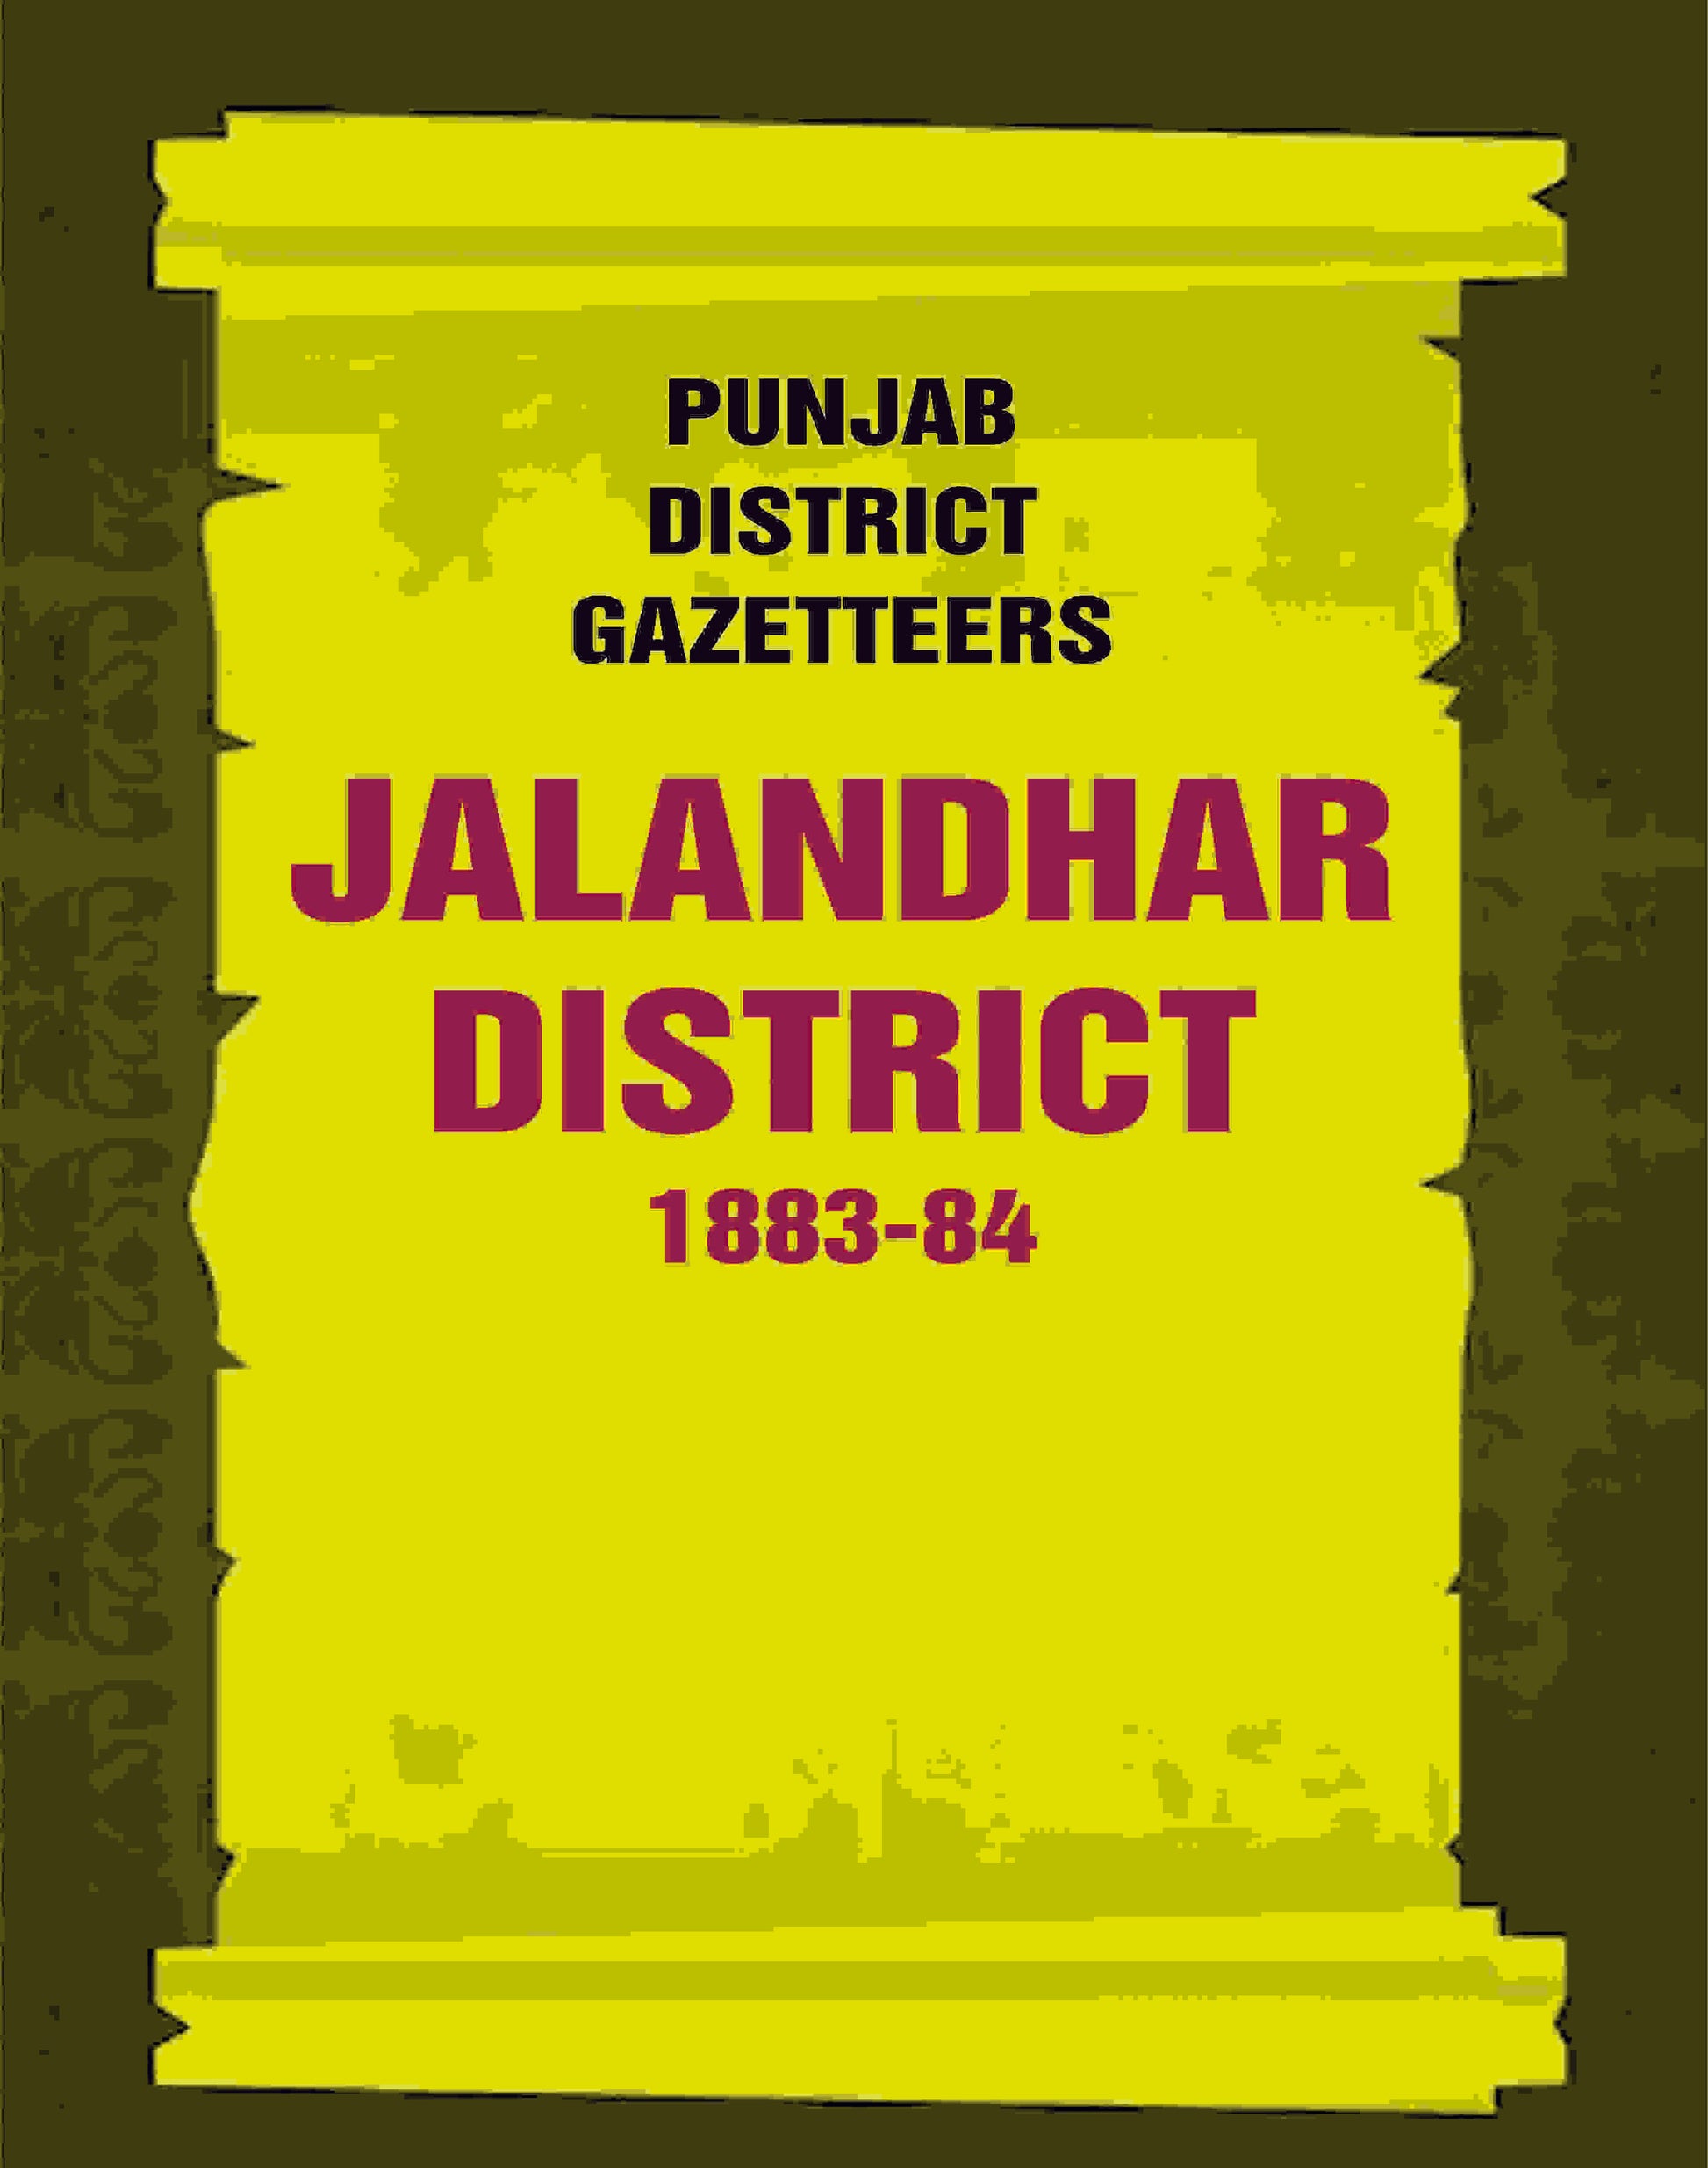 Punjab District Gazetteers: Jalandhar District 1883-84